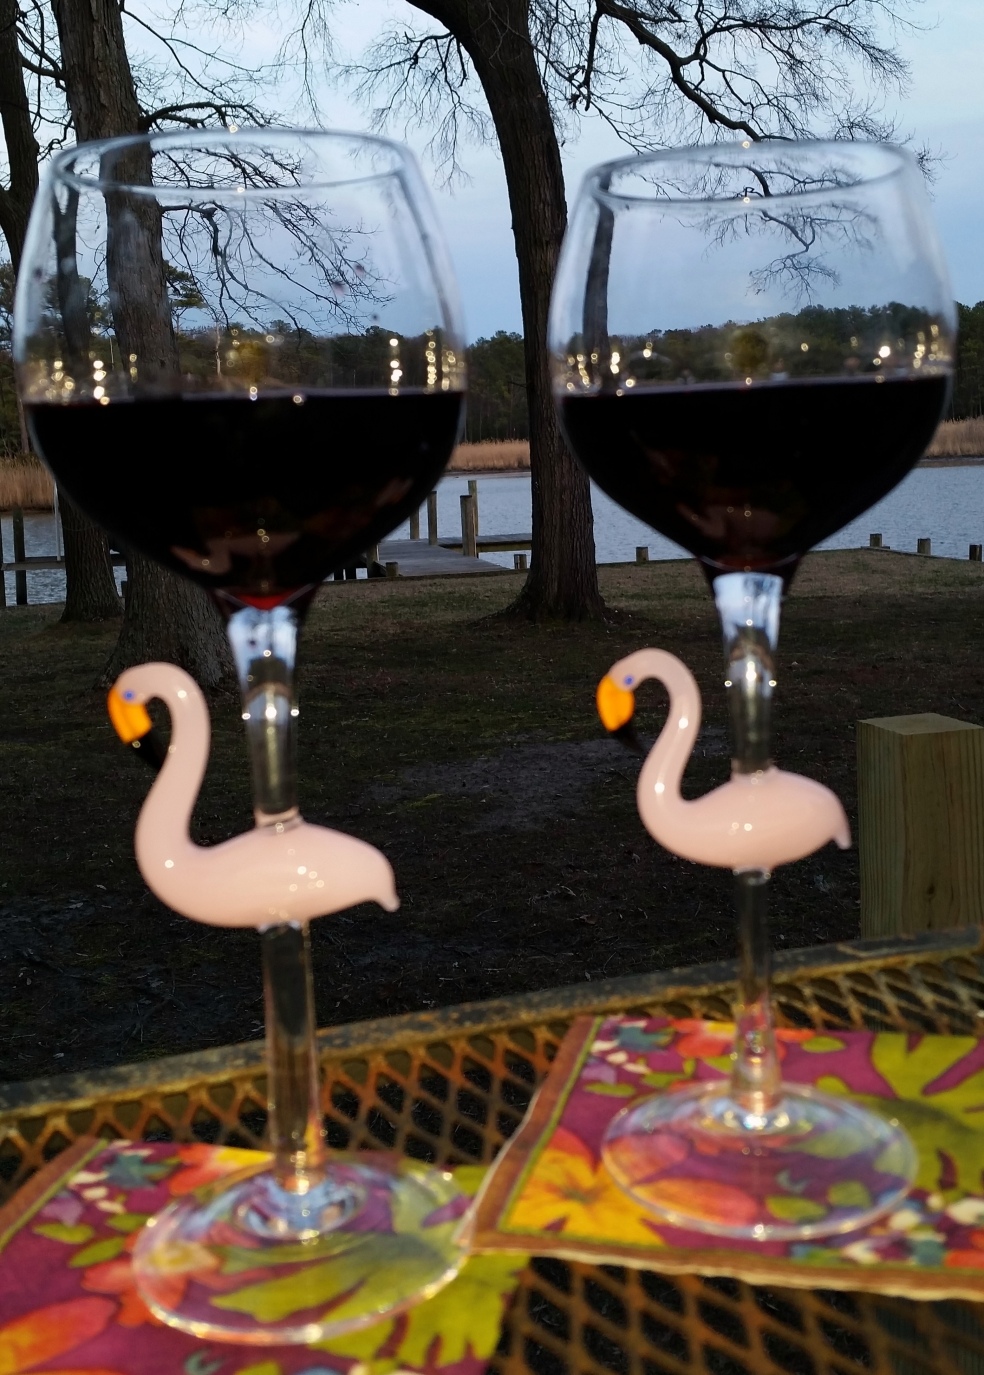 Flamingo glasses with wine